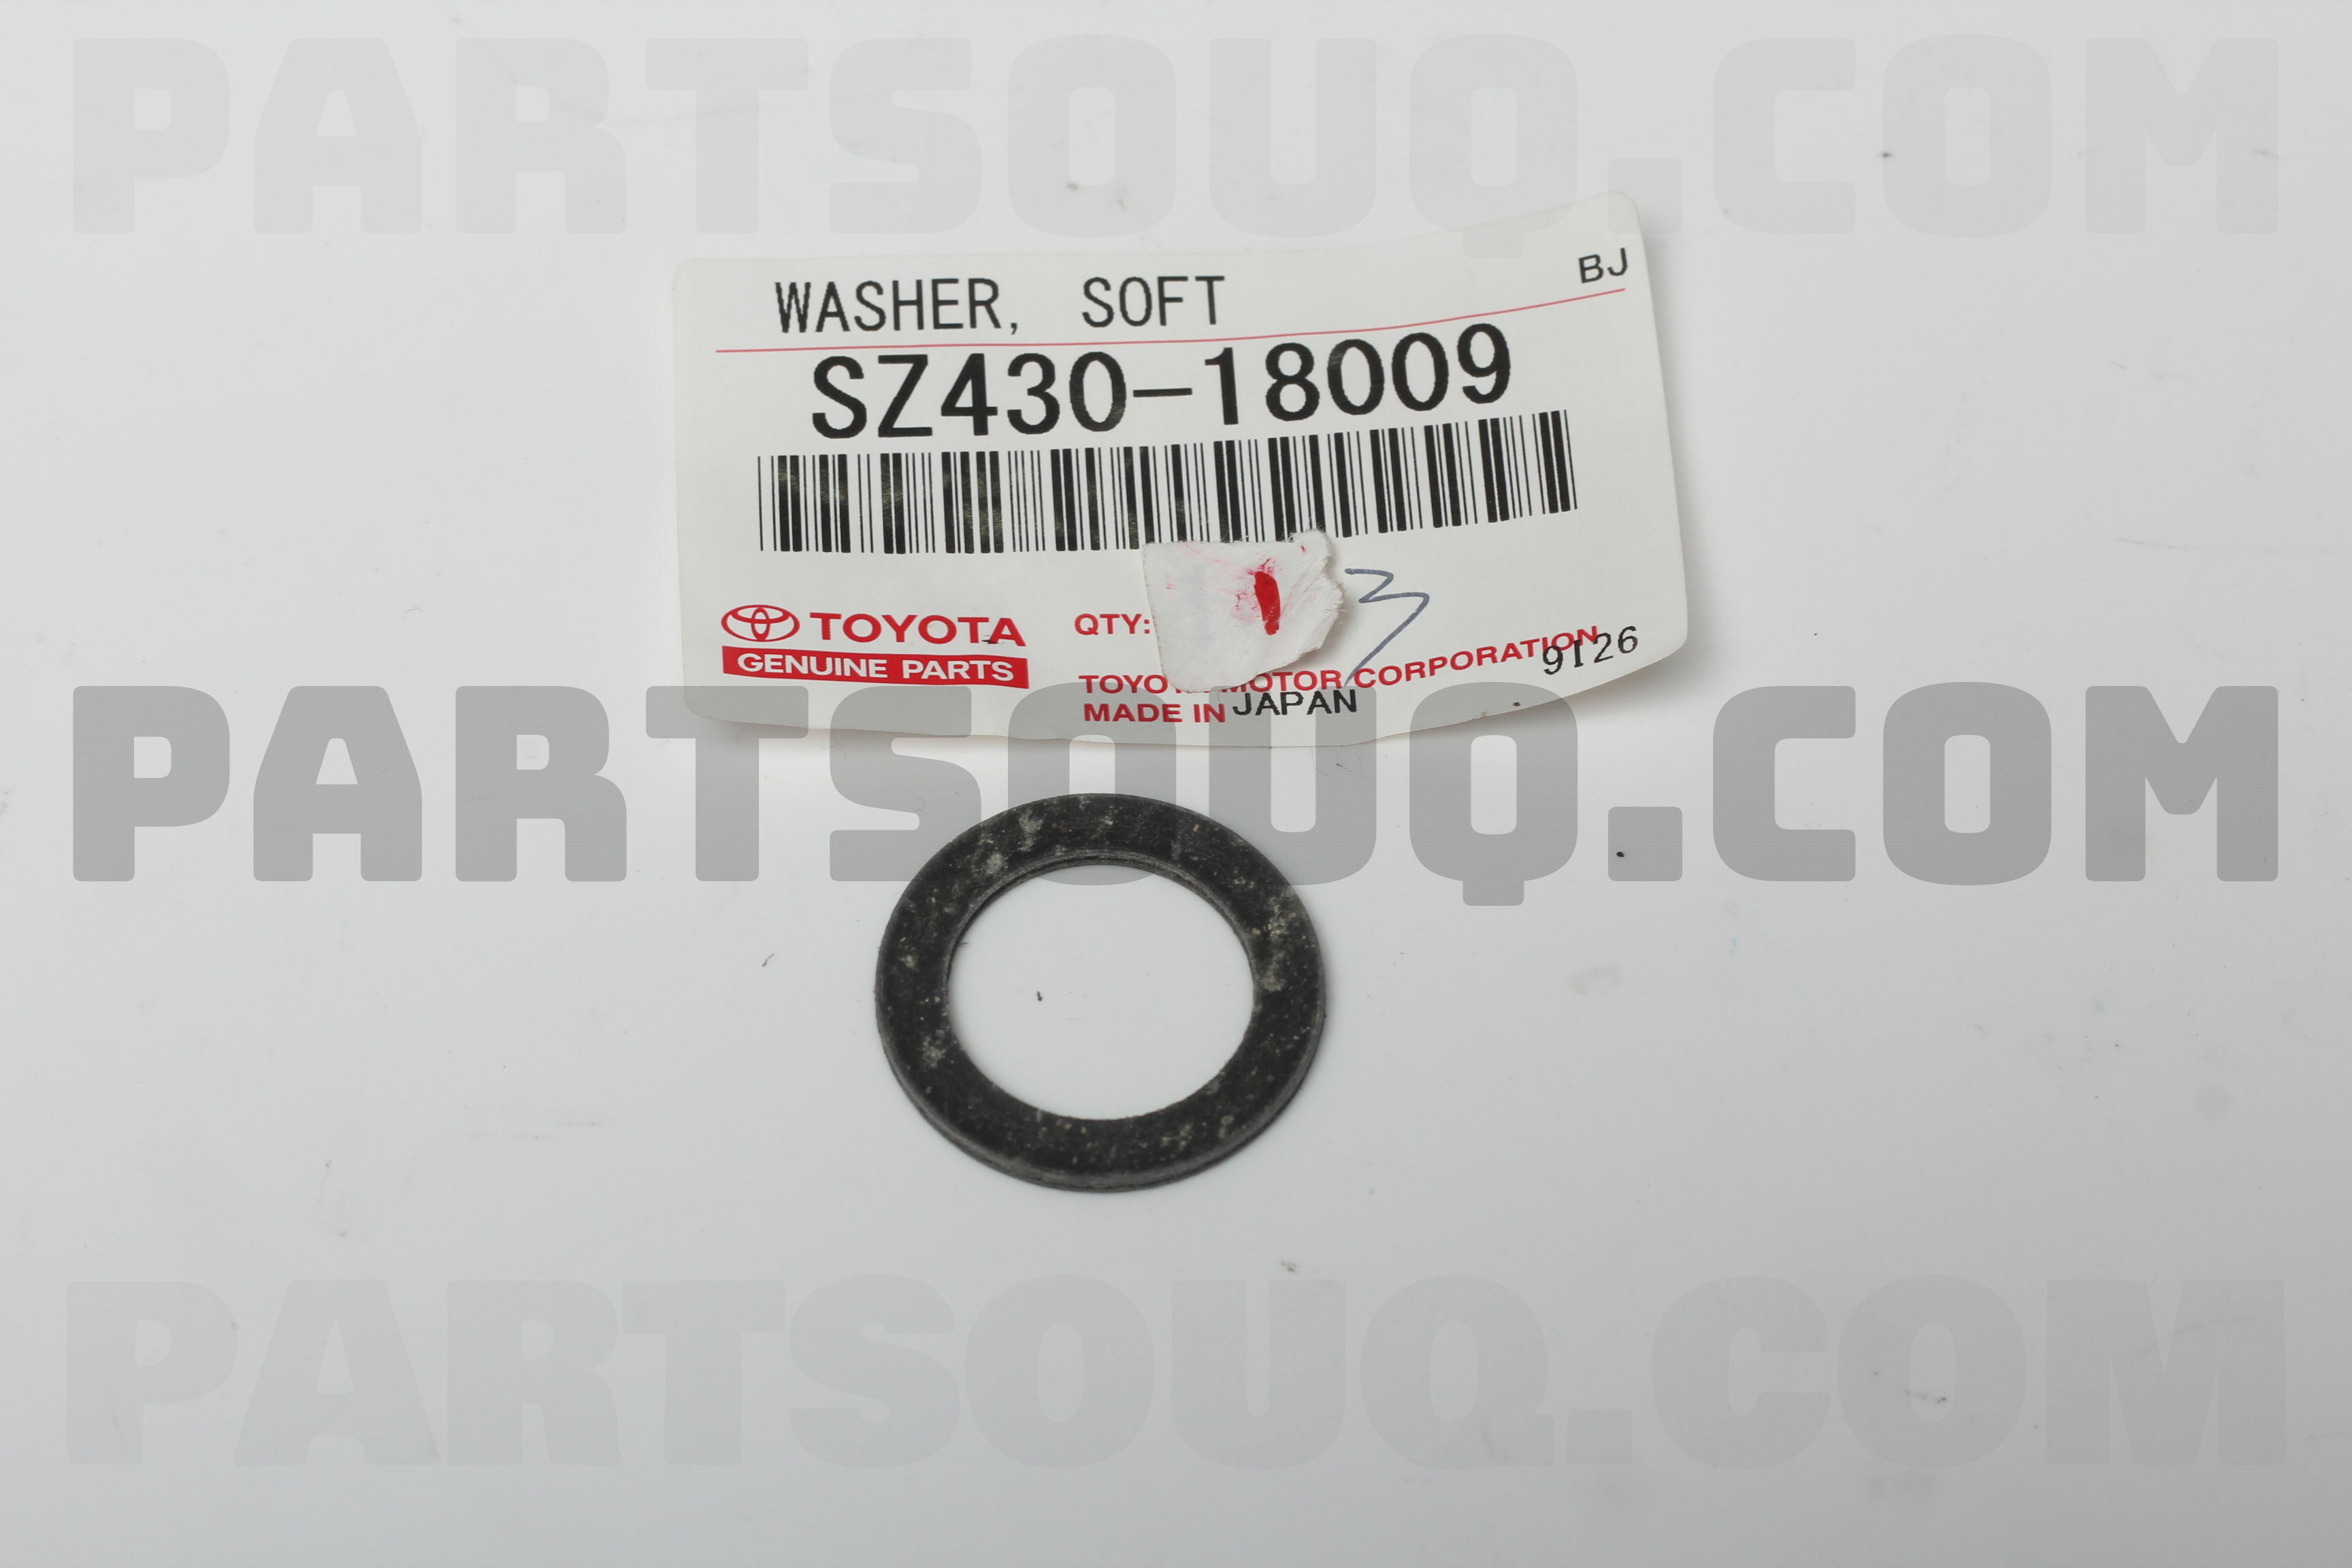 MANIFOLD GASKET S171041610 | Toyota Parts | PartSouq